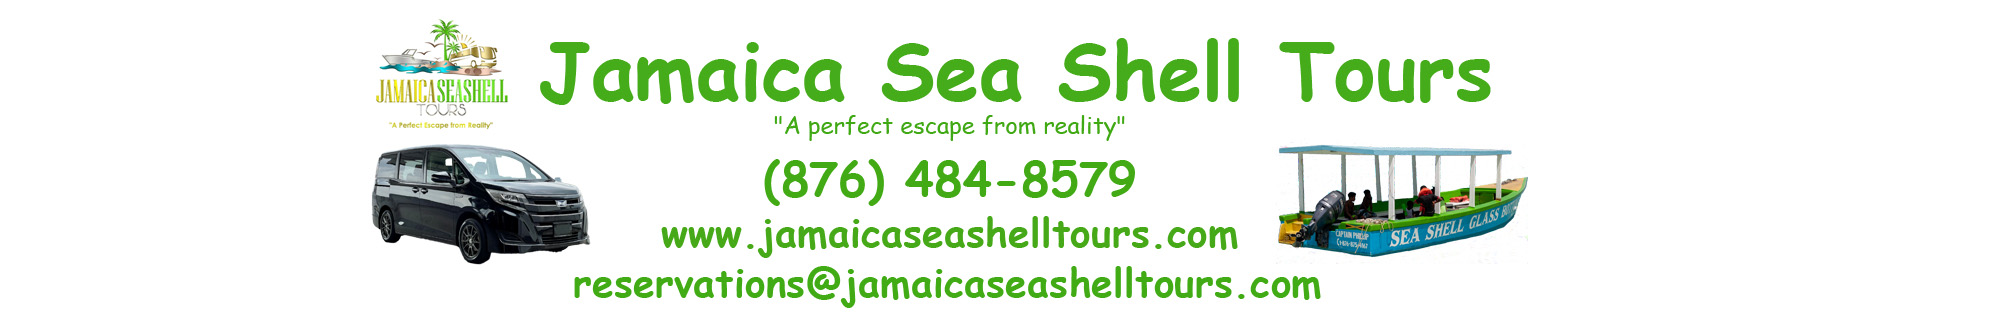 Jamaica Sea Shell Tours - www.jamaicaseashelltours.com